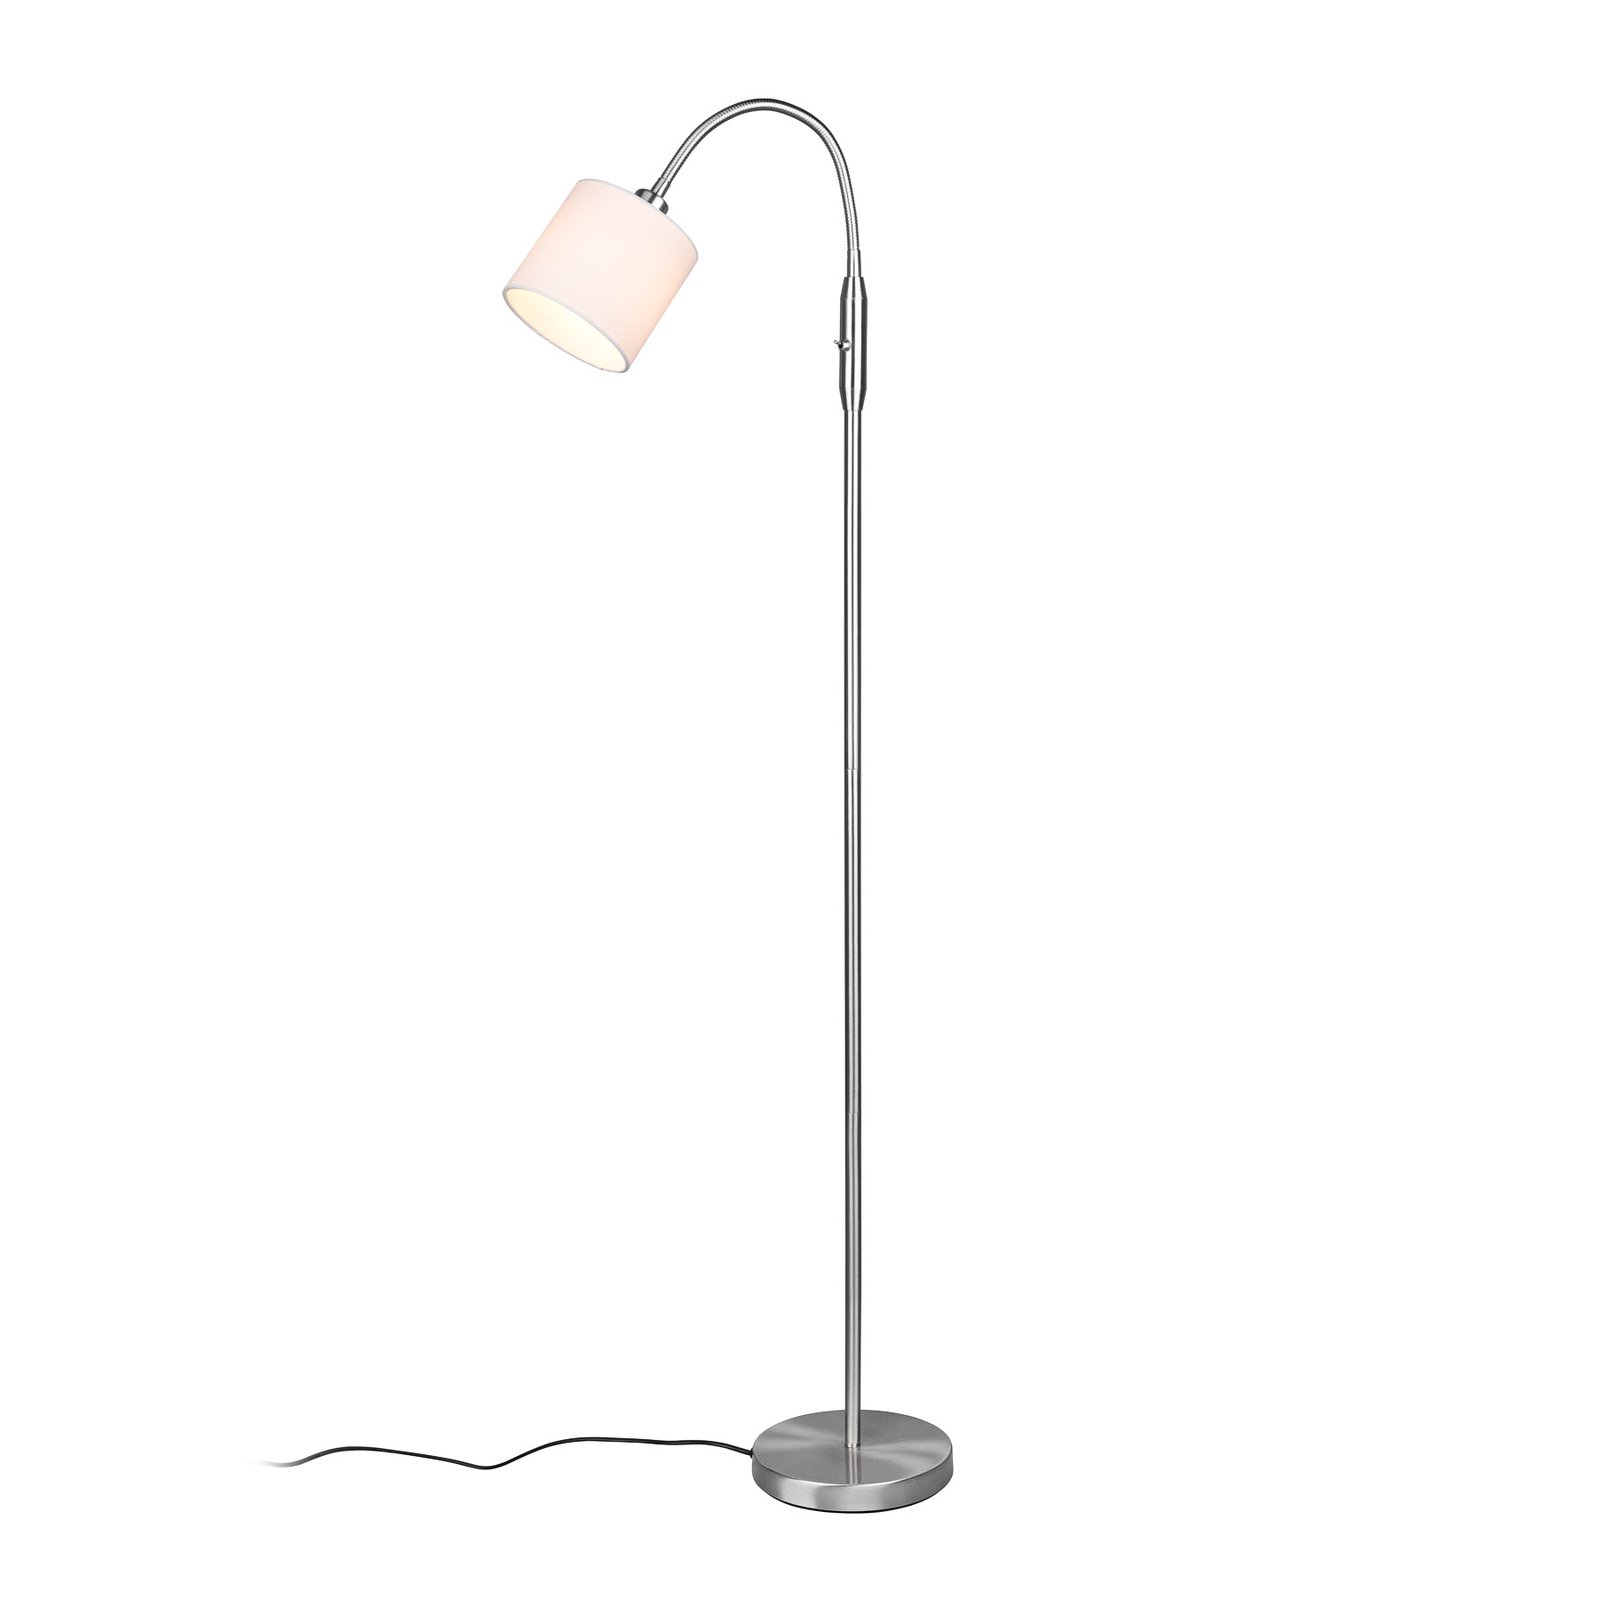 Tommy gulvlampe, nikkel/hvit, høyde 130 cm, metall/stoff